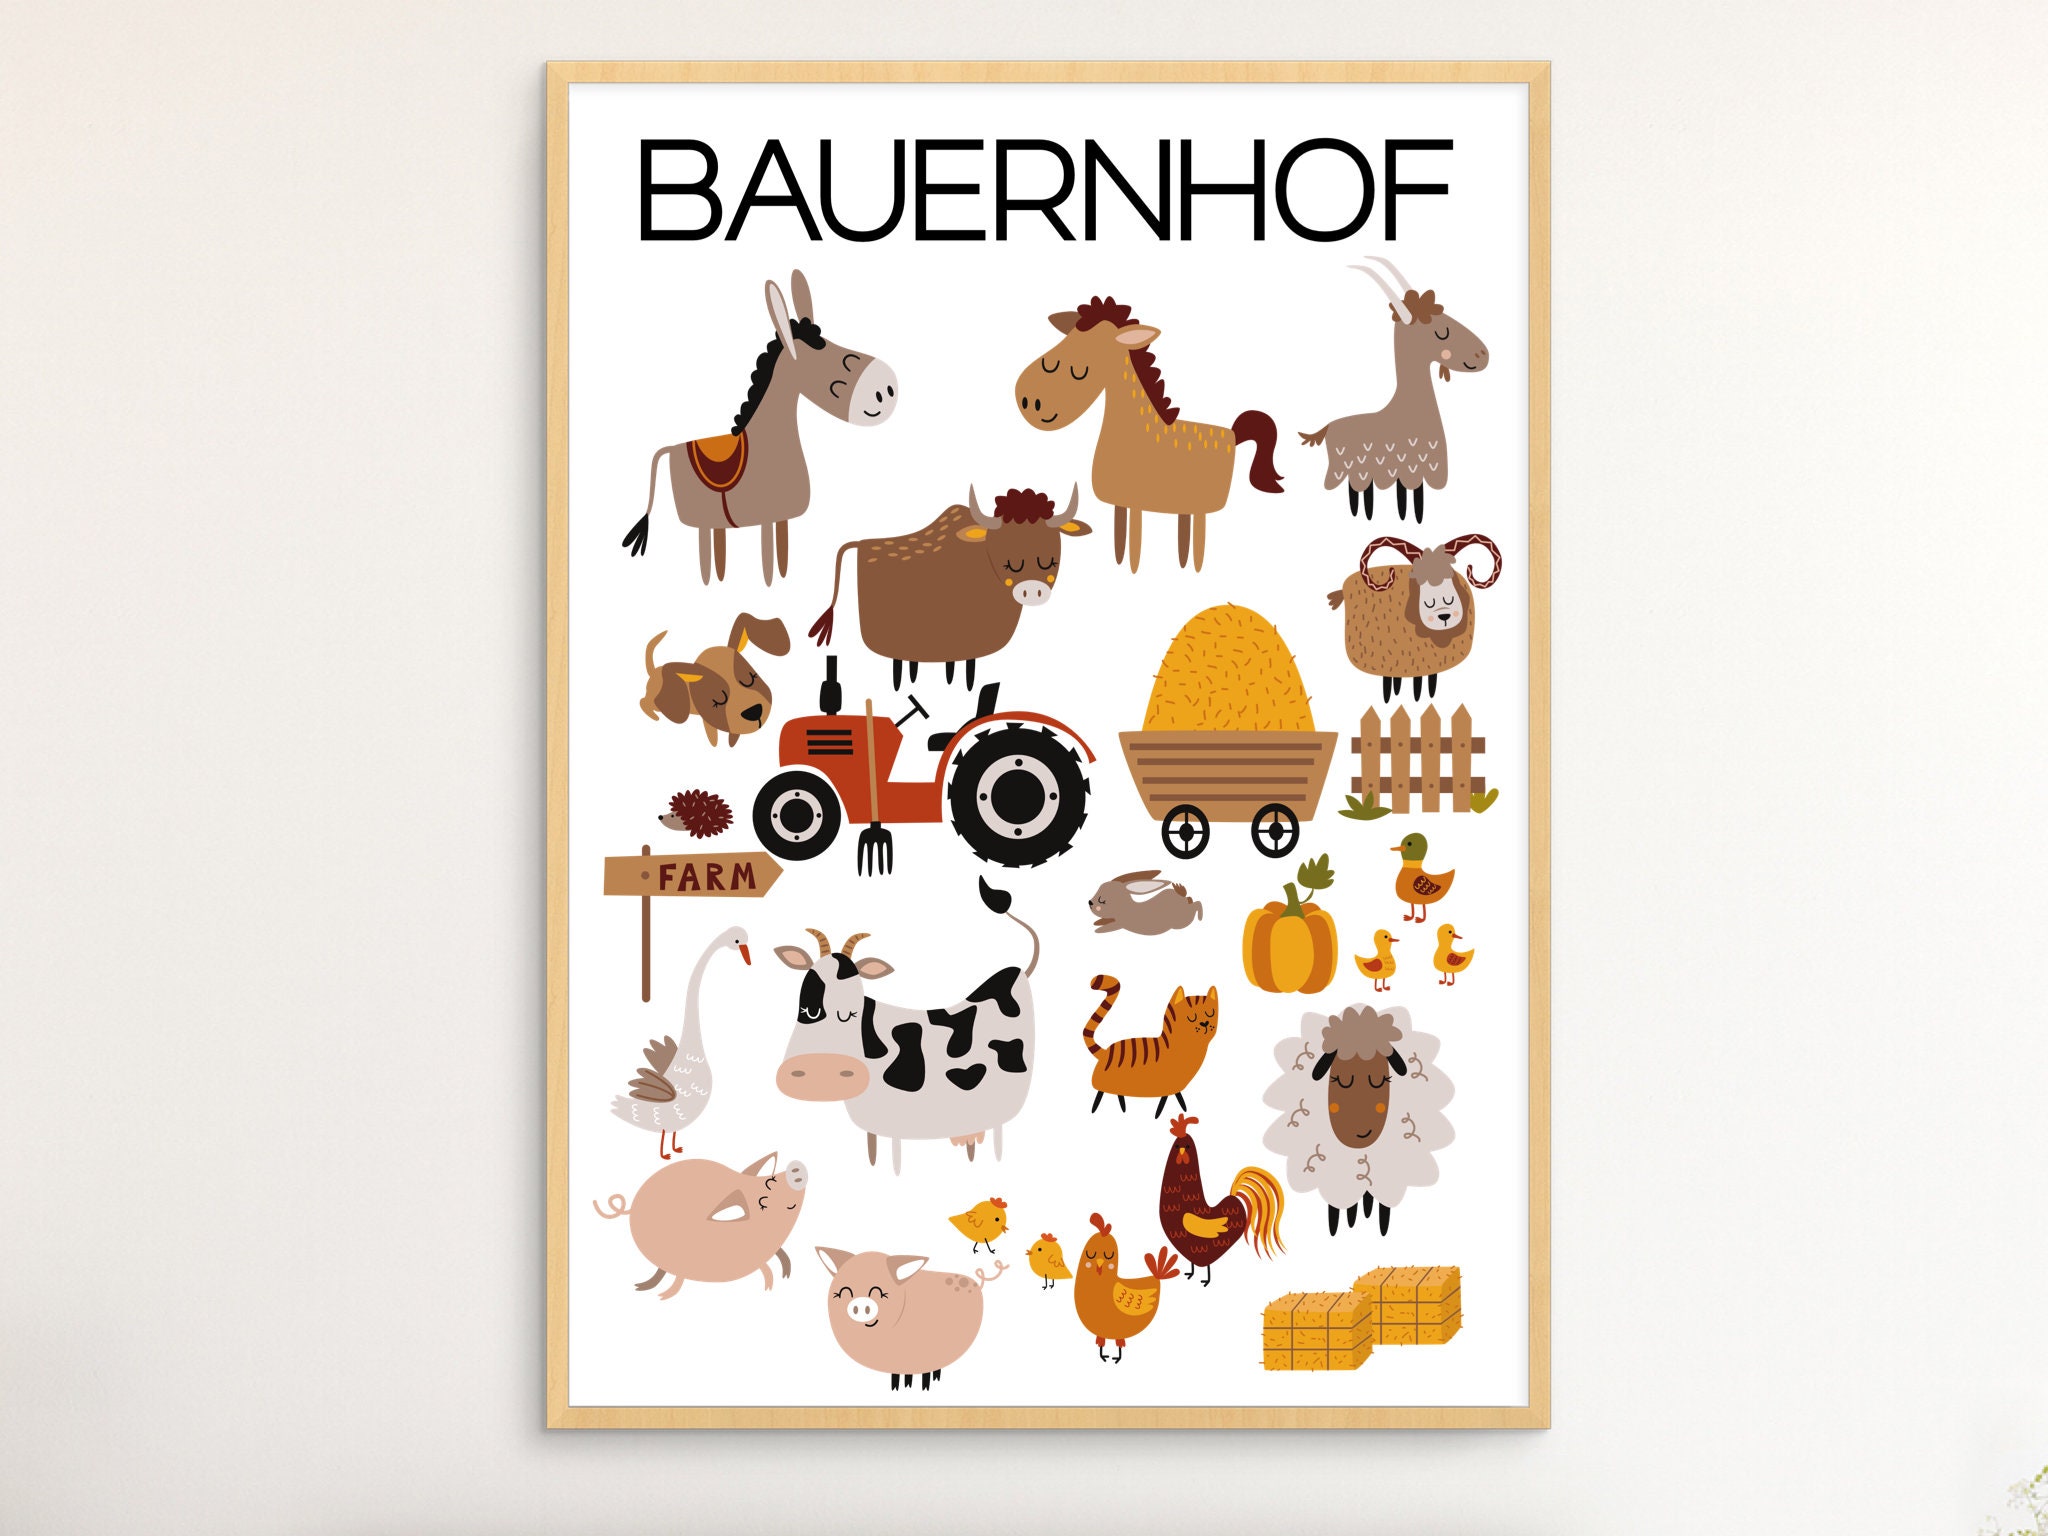 Bauernhof poster